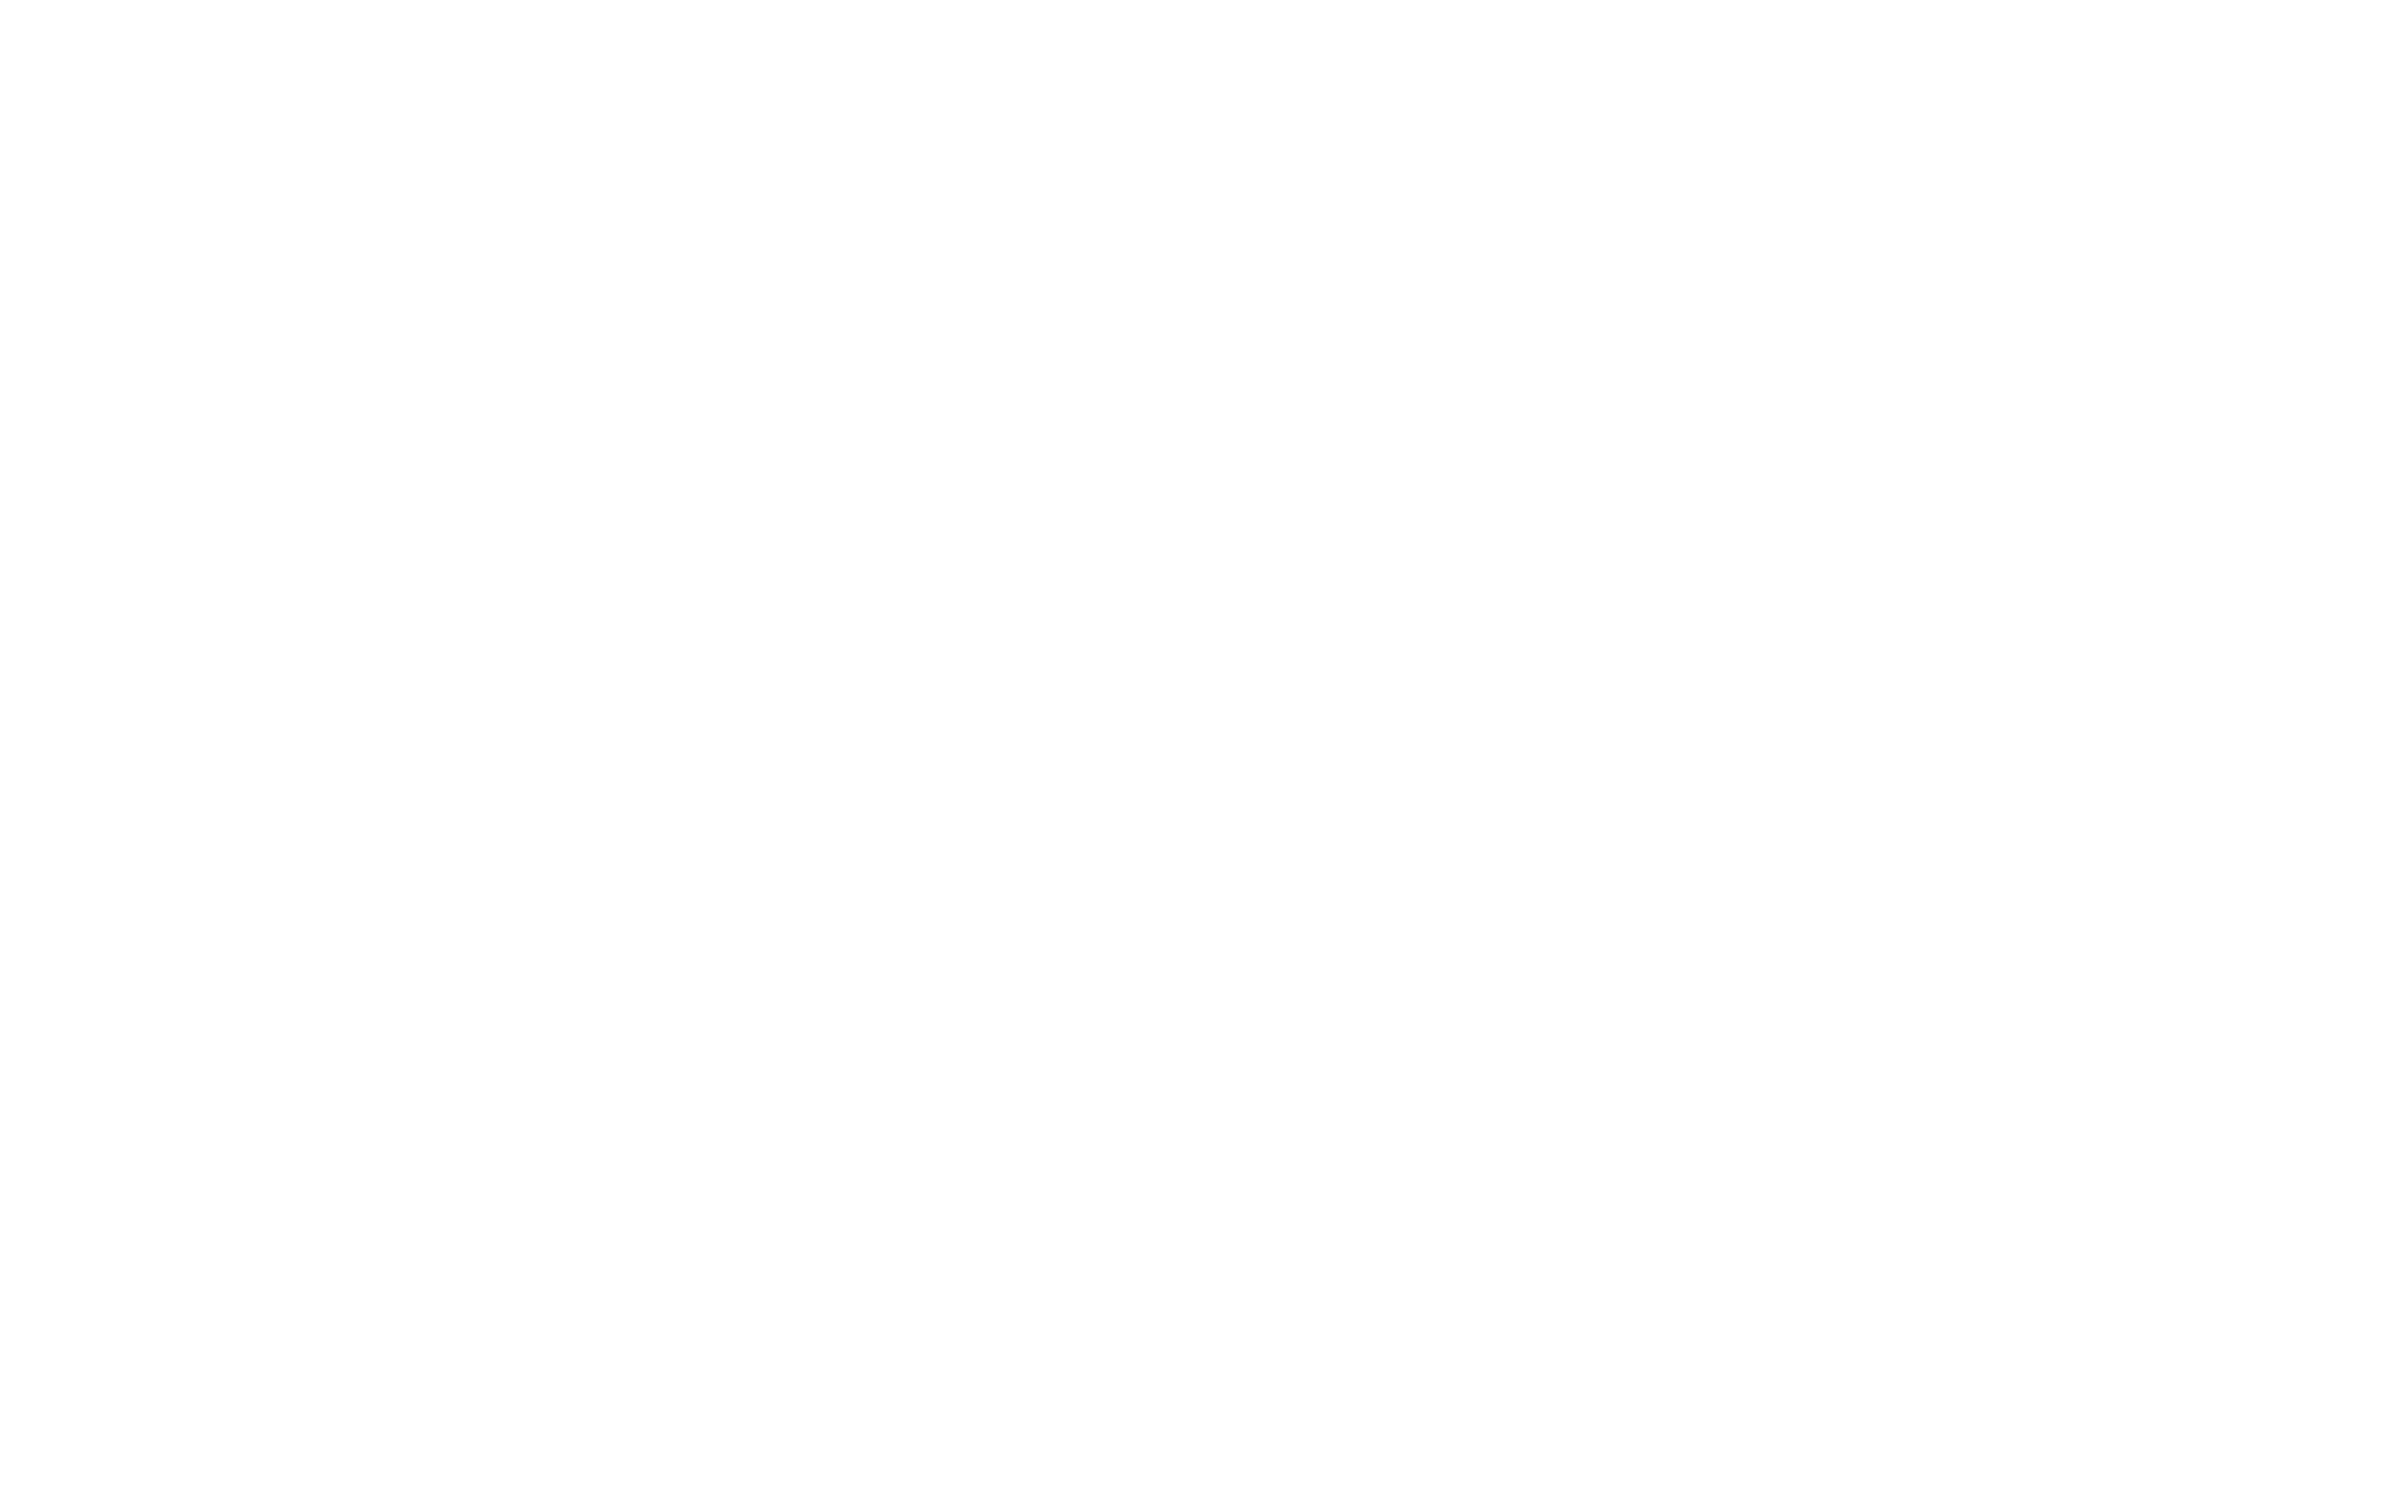 コールセンタースタッフ募集 心に届く旅 - Direct to your heart -